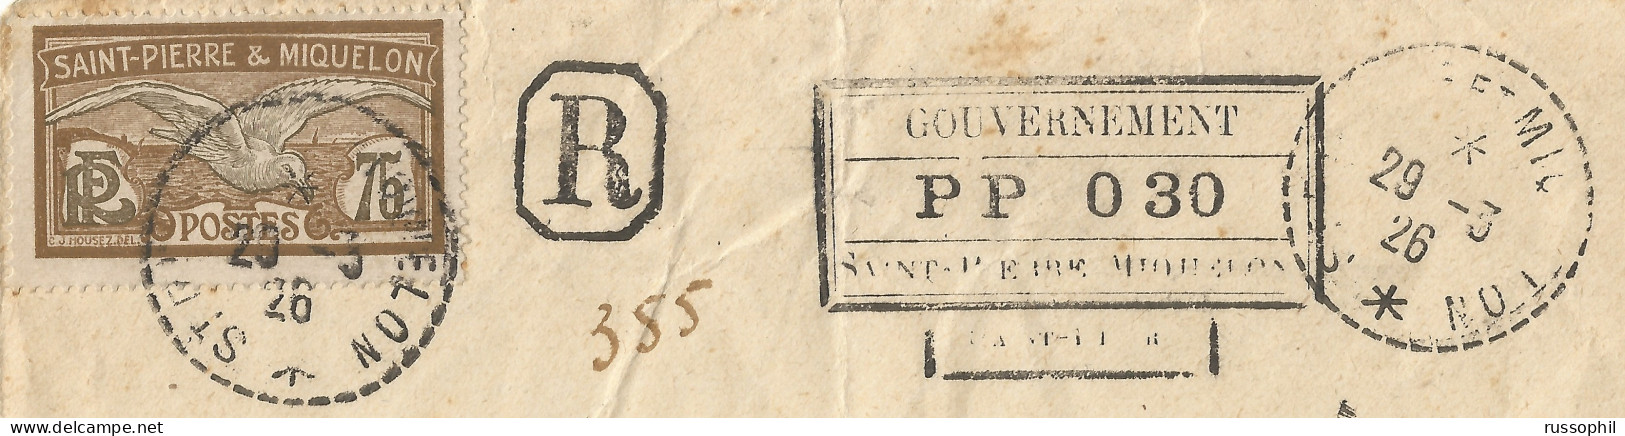 SAINT PIERRE ET MIQUELON - 30 CENT "PORT PAYE - POST PAID - PP" REGISTERED COVER TO FRANCE - 1926  - Briefe U. Dokumente